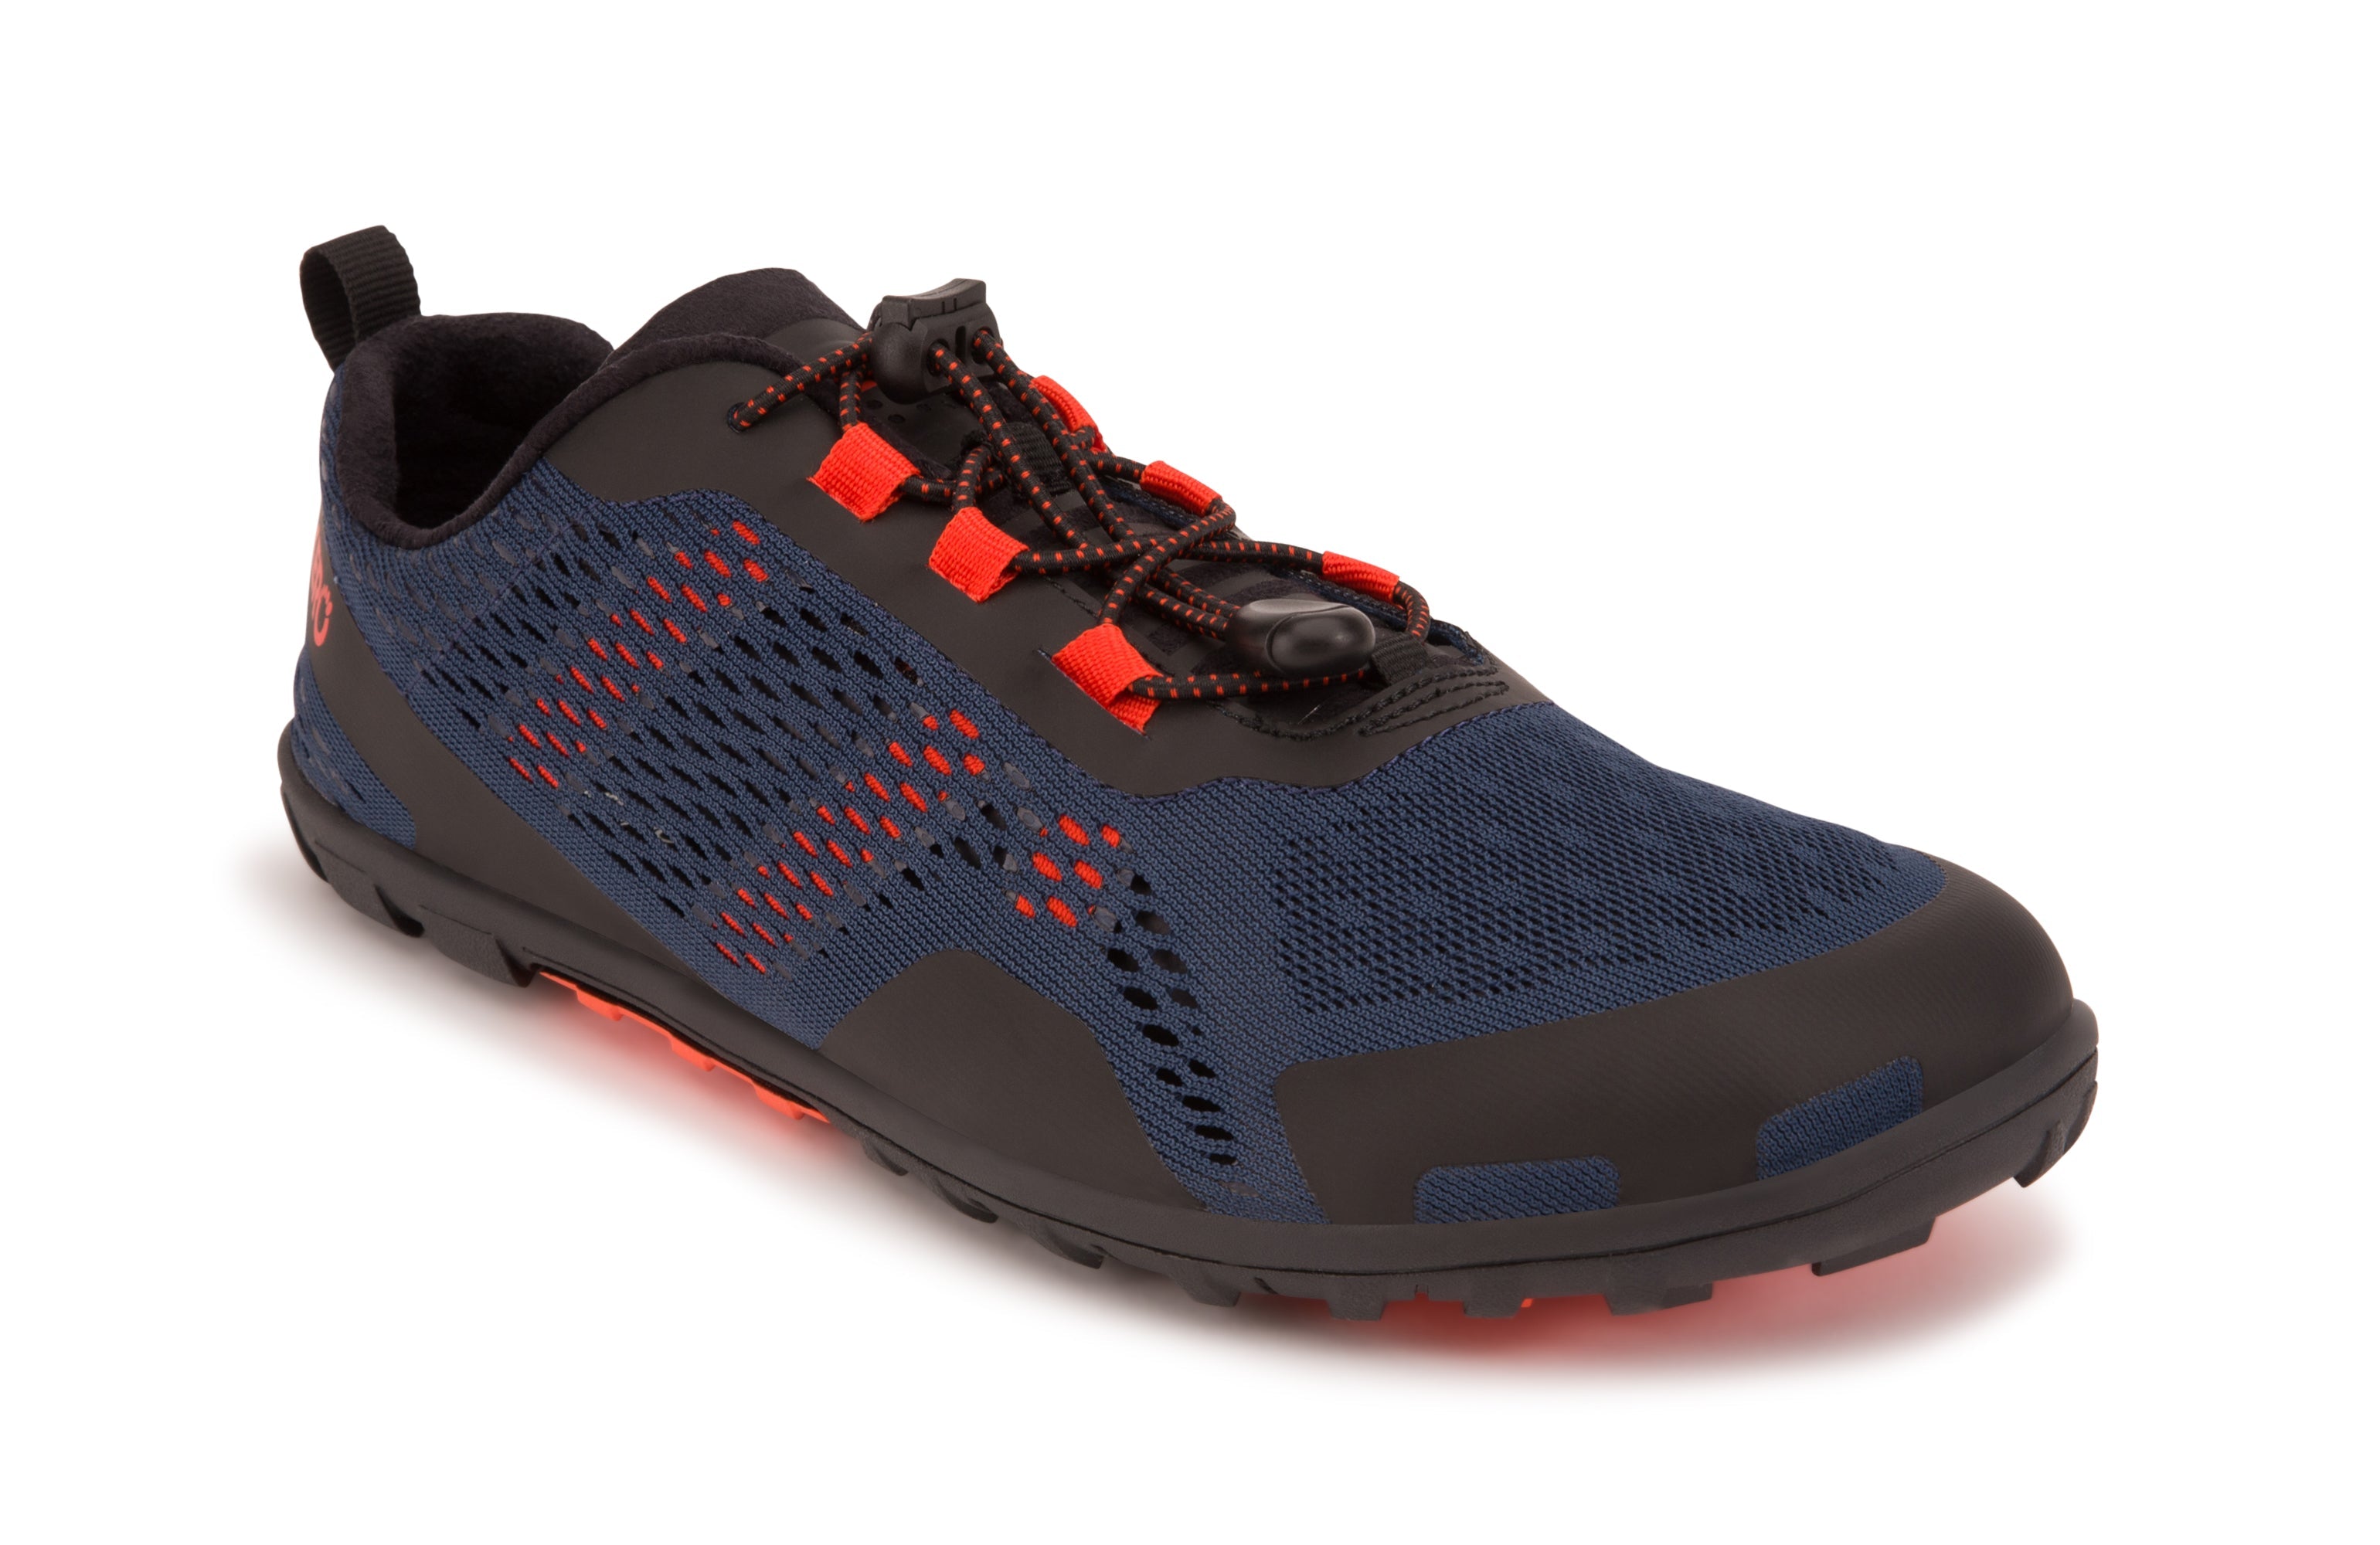 Xero Shoes Aqua X Sport barfods vand træningssko til mænd i farven moonlit blue, vinklet